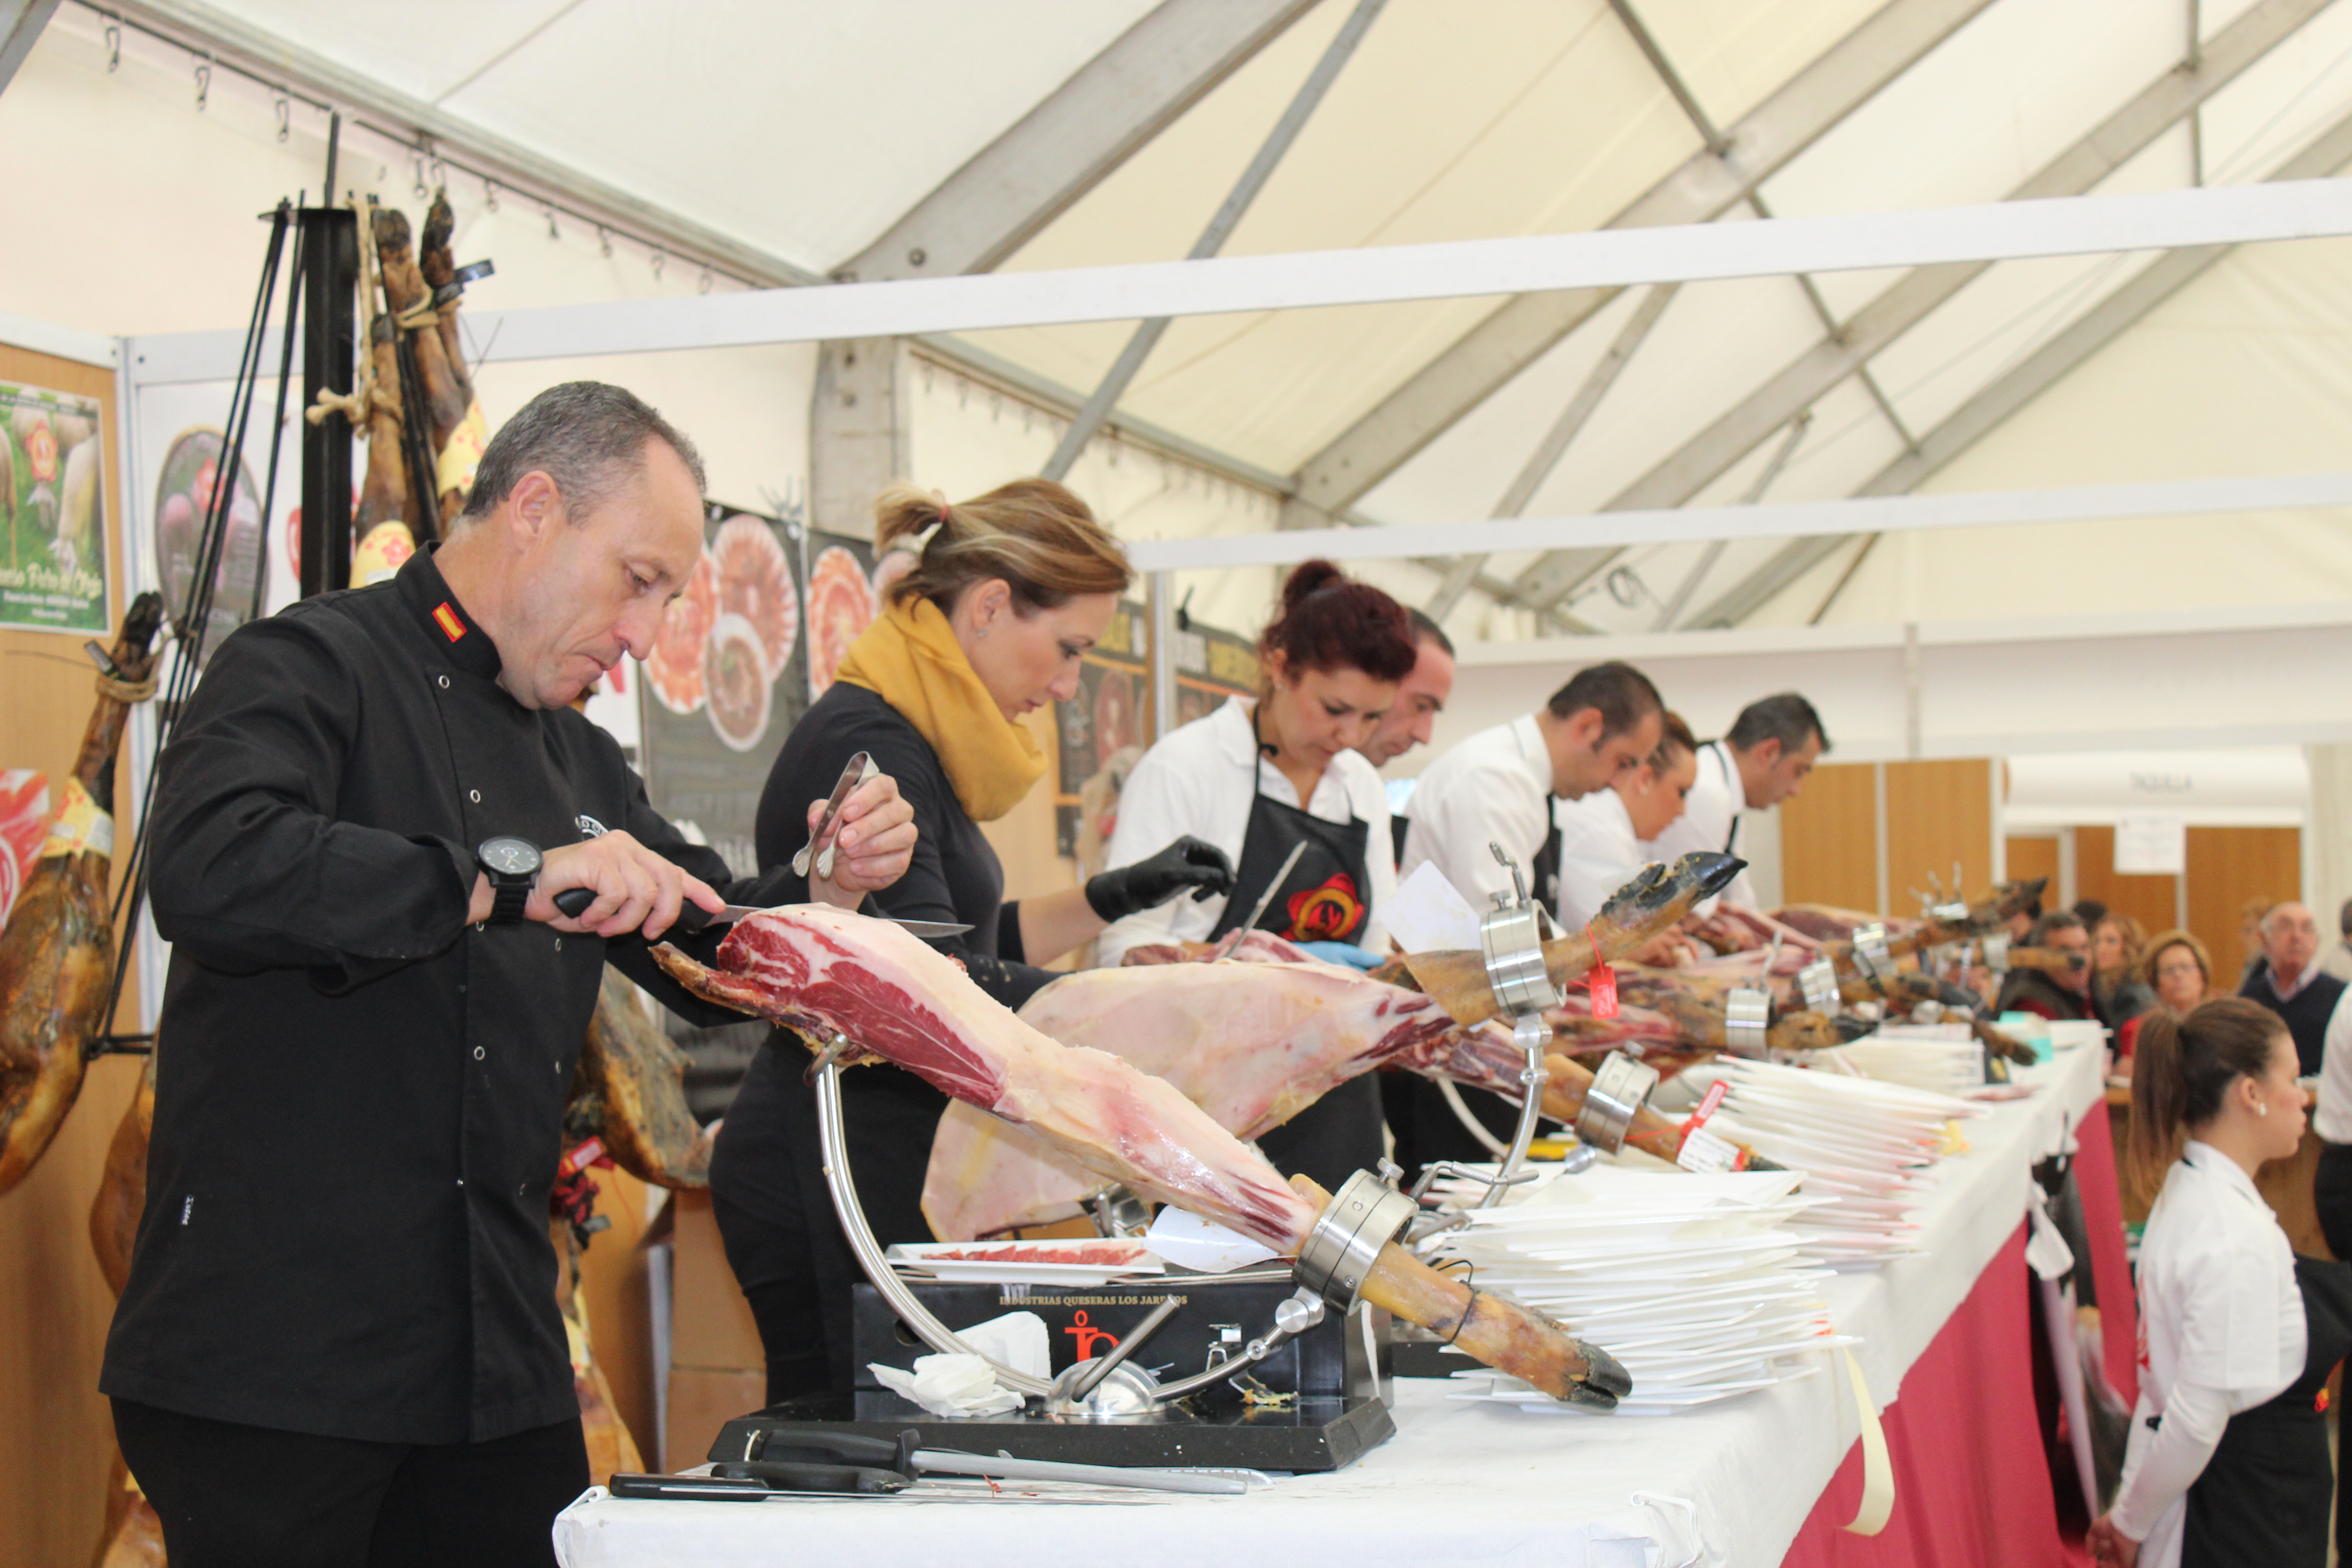 Ham slicers at the Feria del Jamon